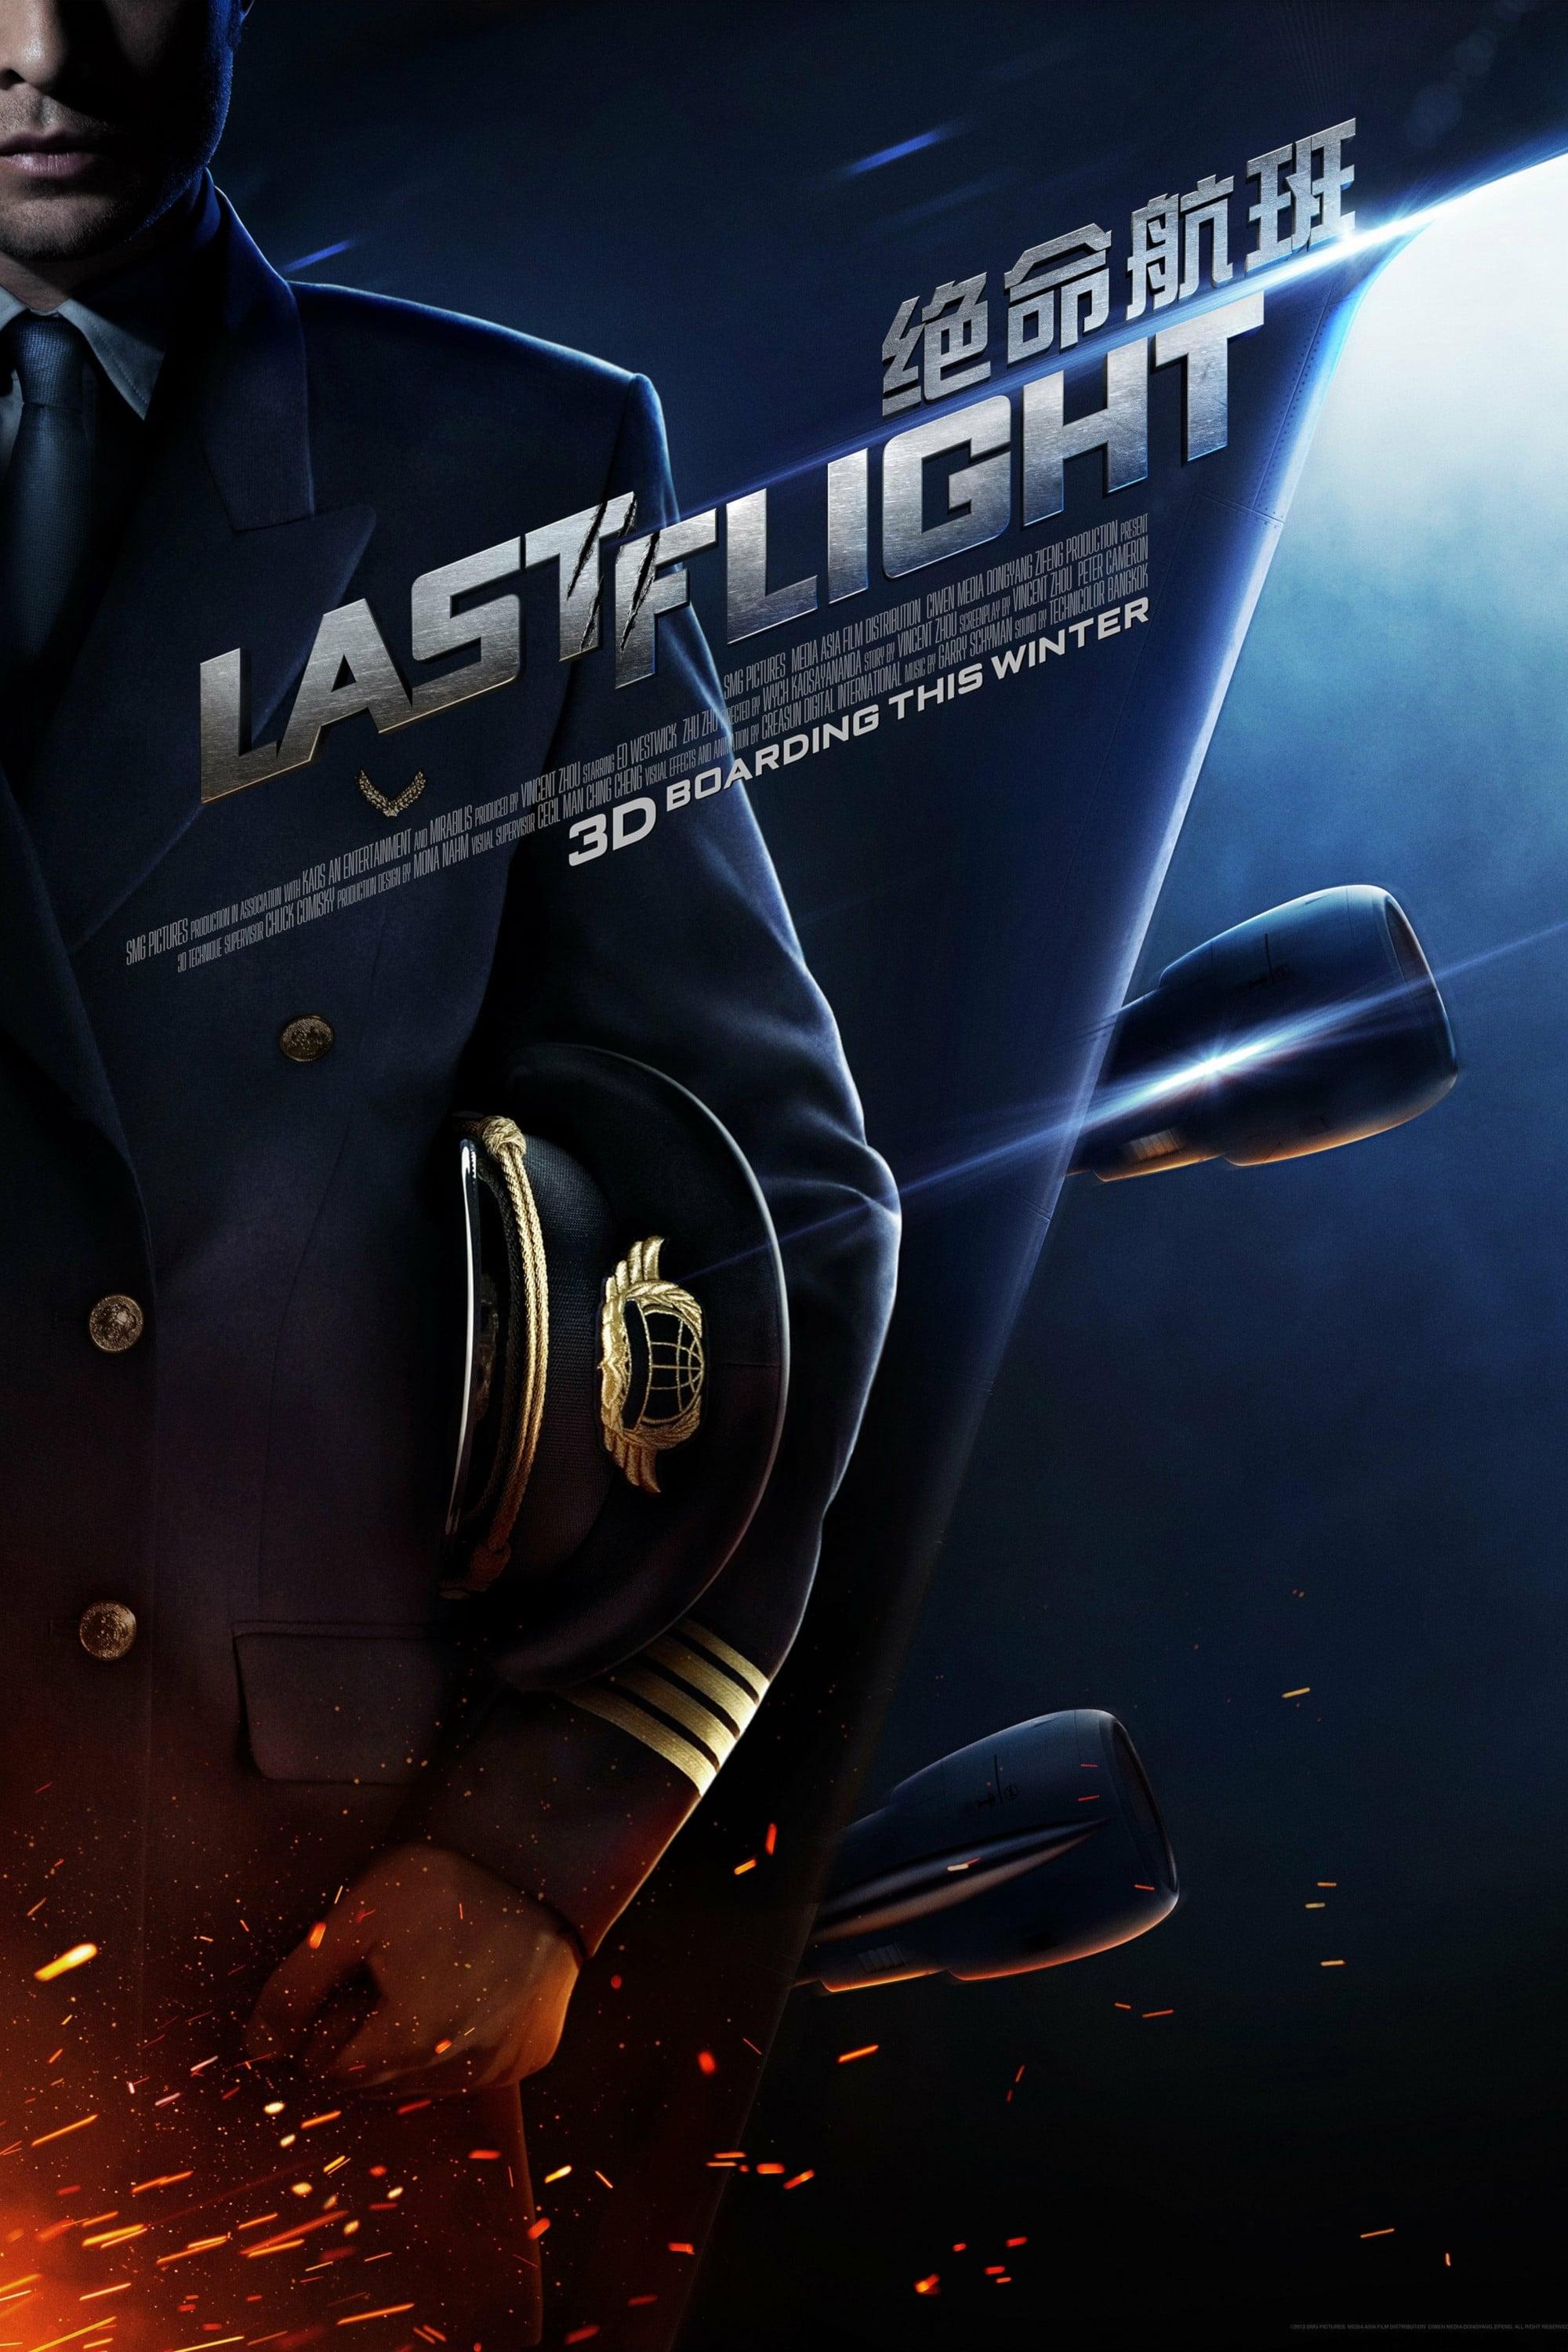 Last Flight poster